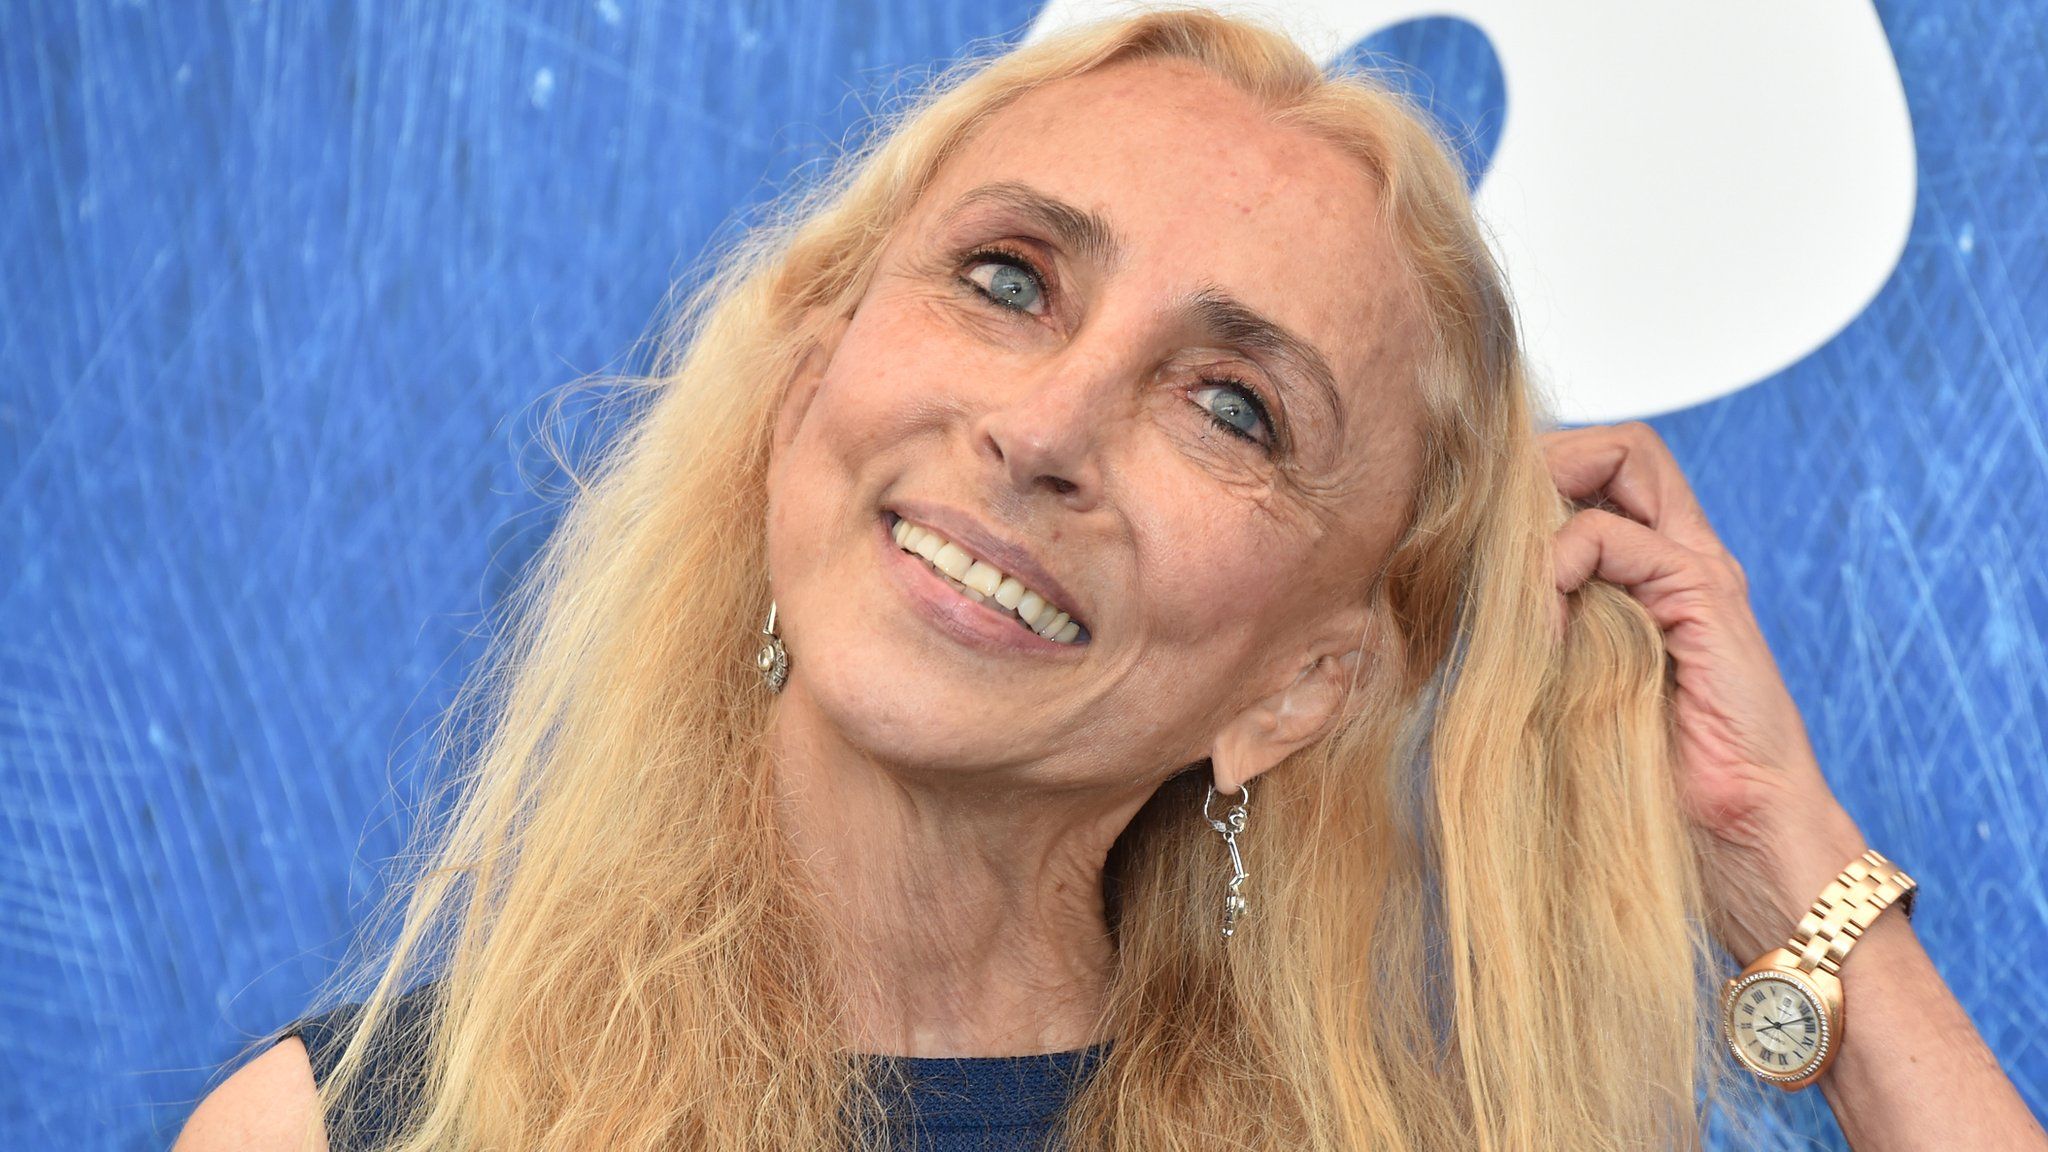 Franca Sozzani at the Venice Film Festival on 2 September 2016